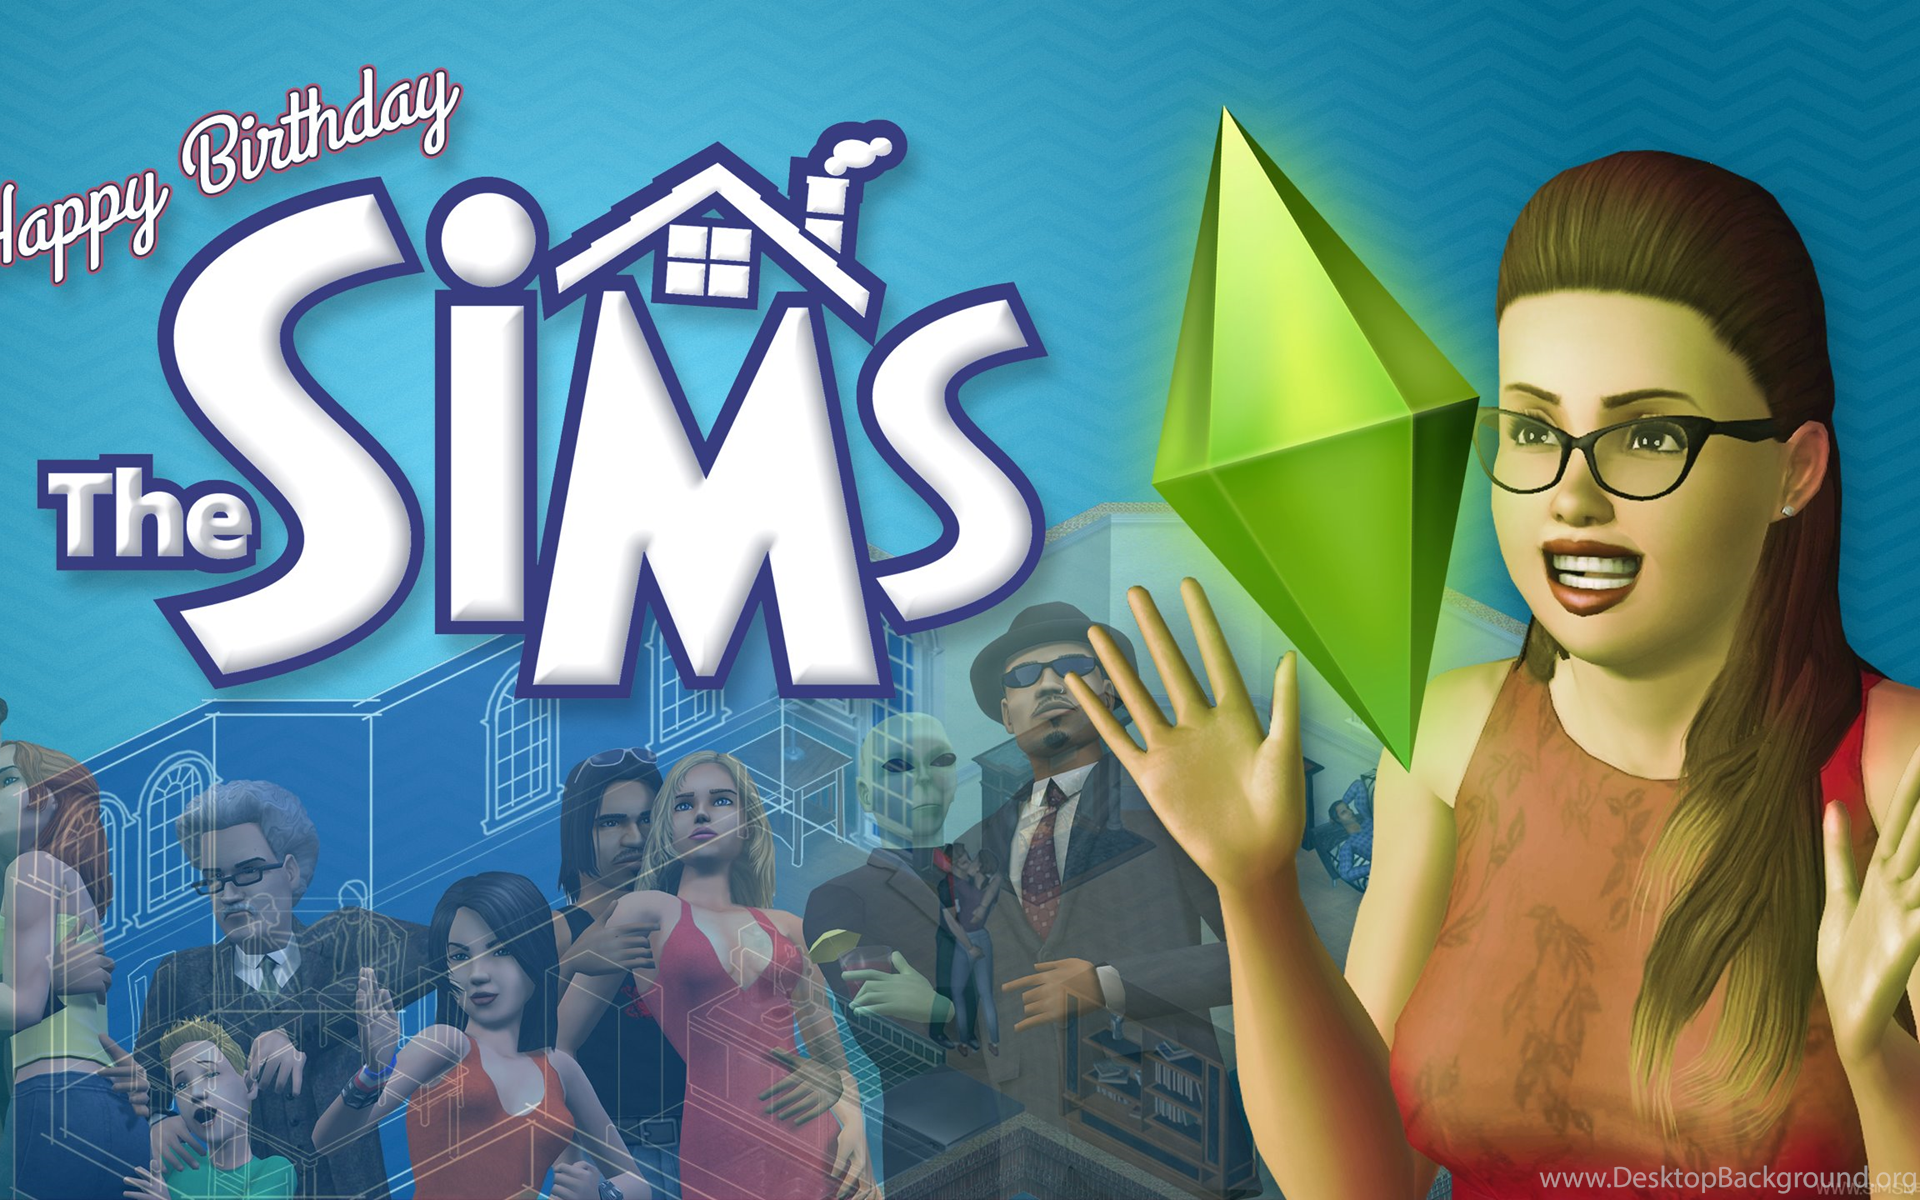 Игра SIMS 1. The SIMS 1 обложка. SIMS 4 обложка. SIMS 4 обложка игры. Sims google play